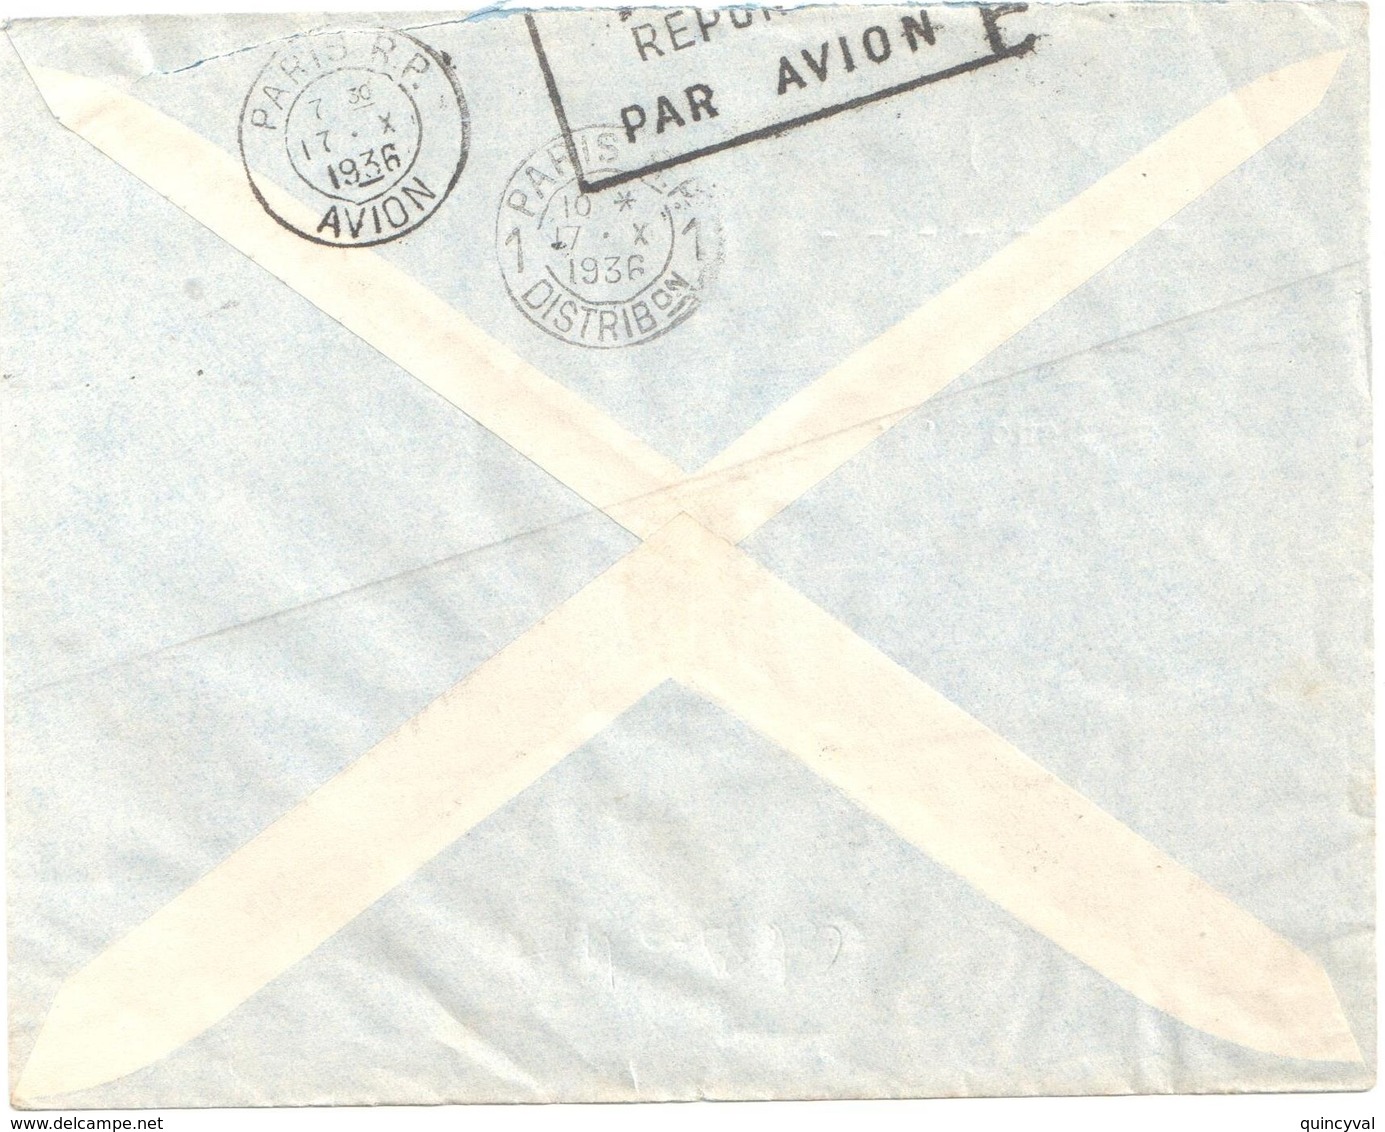 GAO Soudan Français Lettre PAR AVION Ob 10 10 1936 Arrivée Verso 17/10/1936 1,25f Batelier Niger Yv 80 - Lettres & Documents